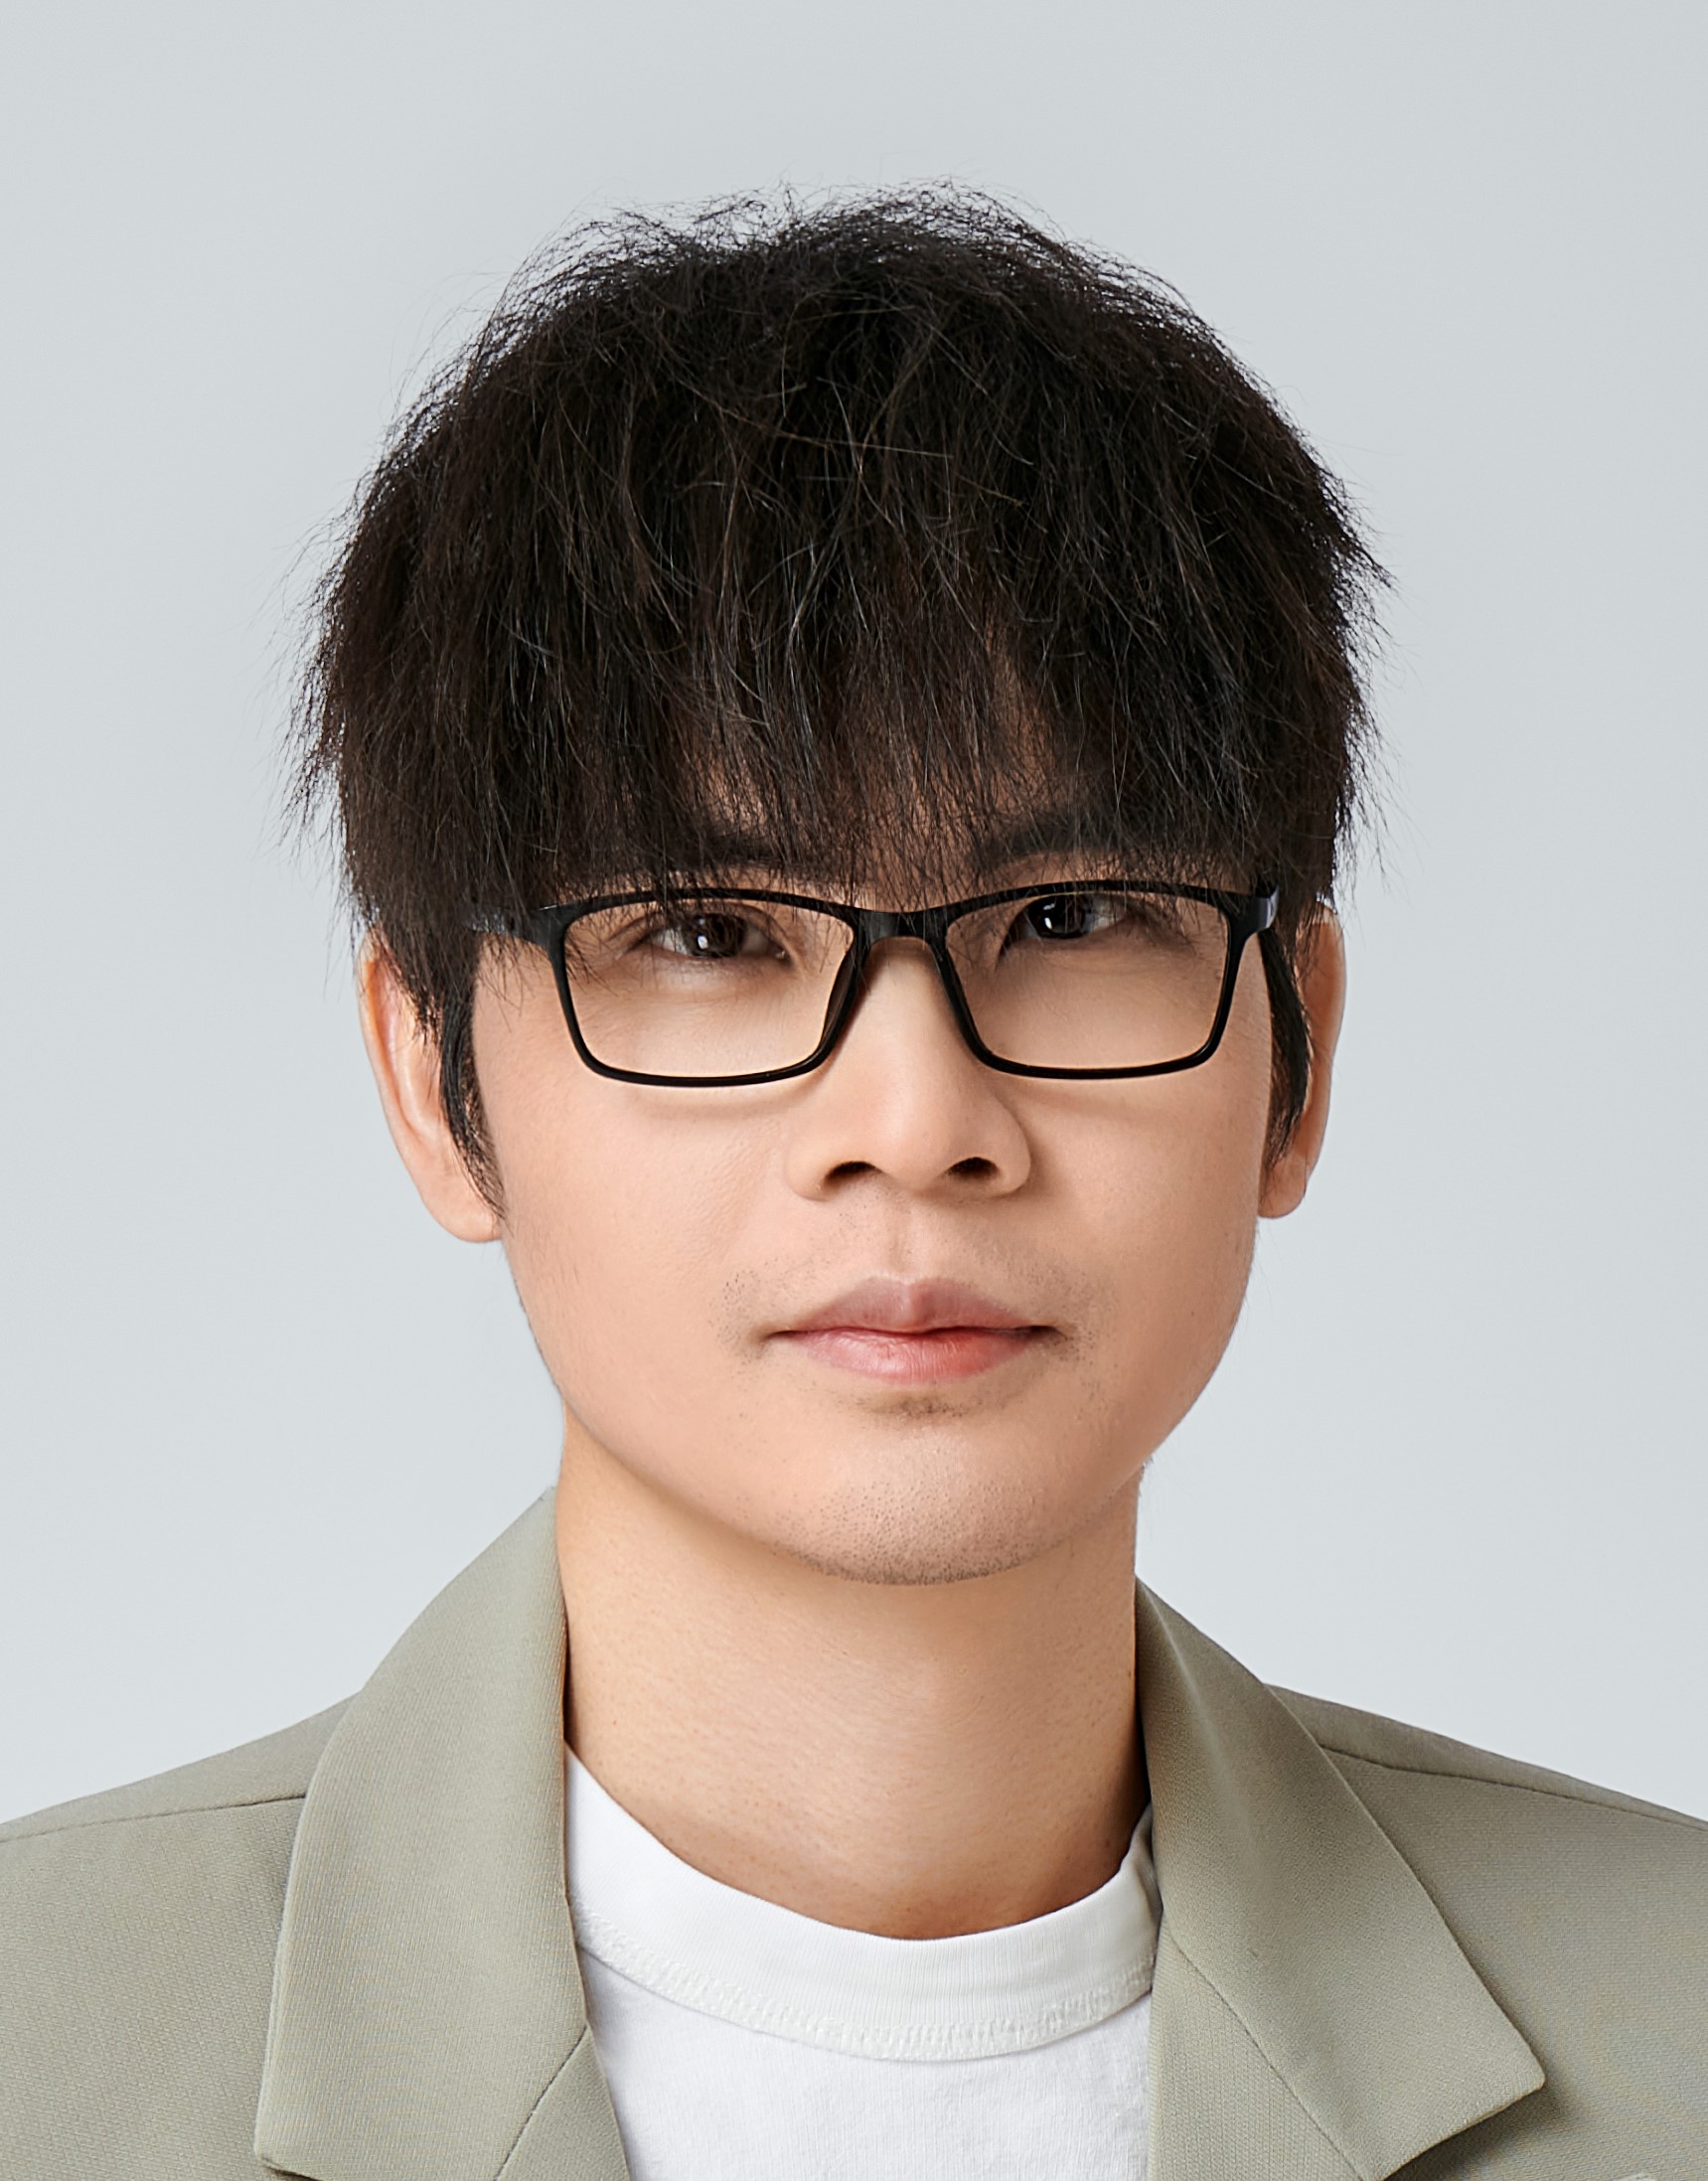 Prof. ZHAO Xiaofeng, Edward